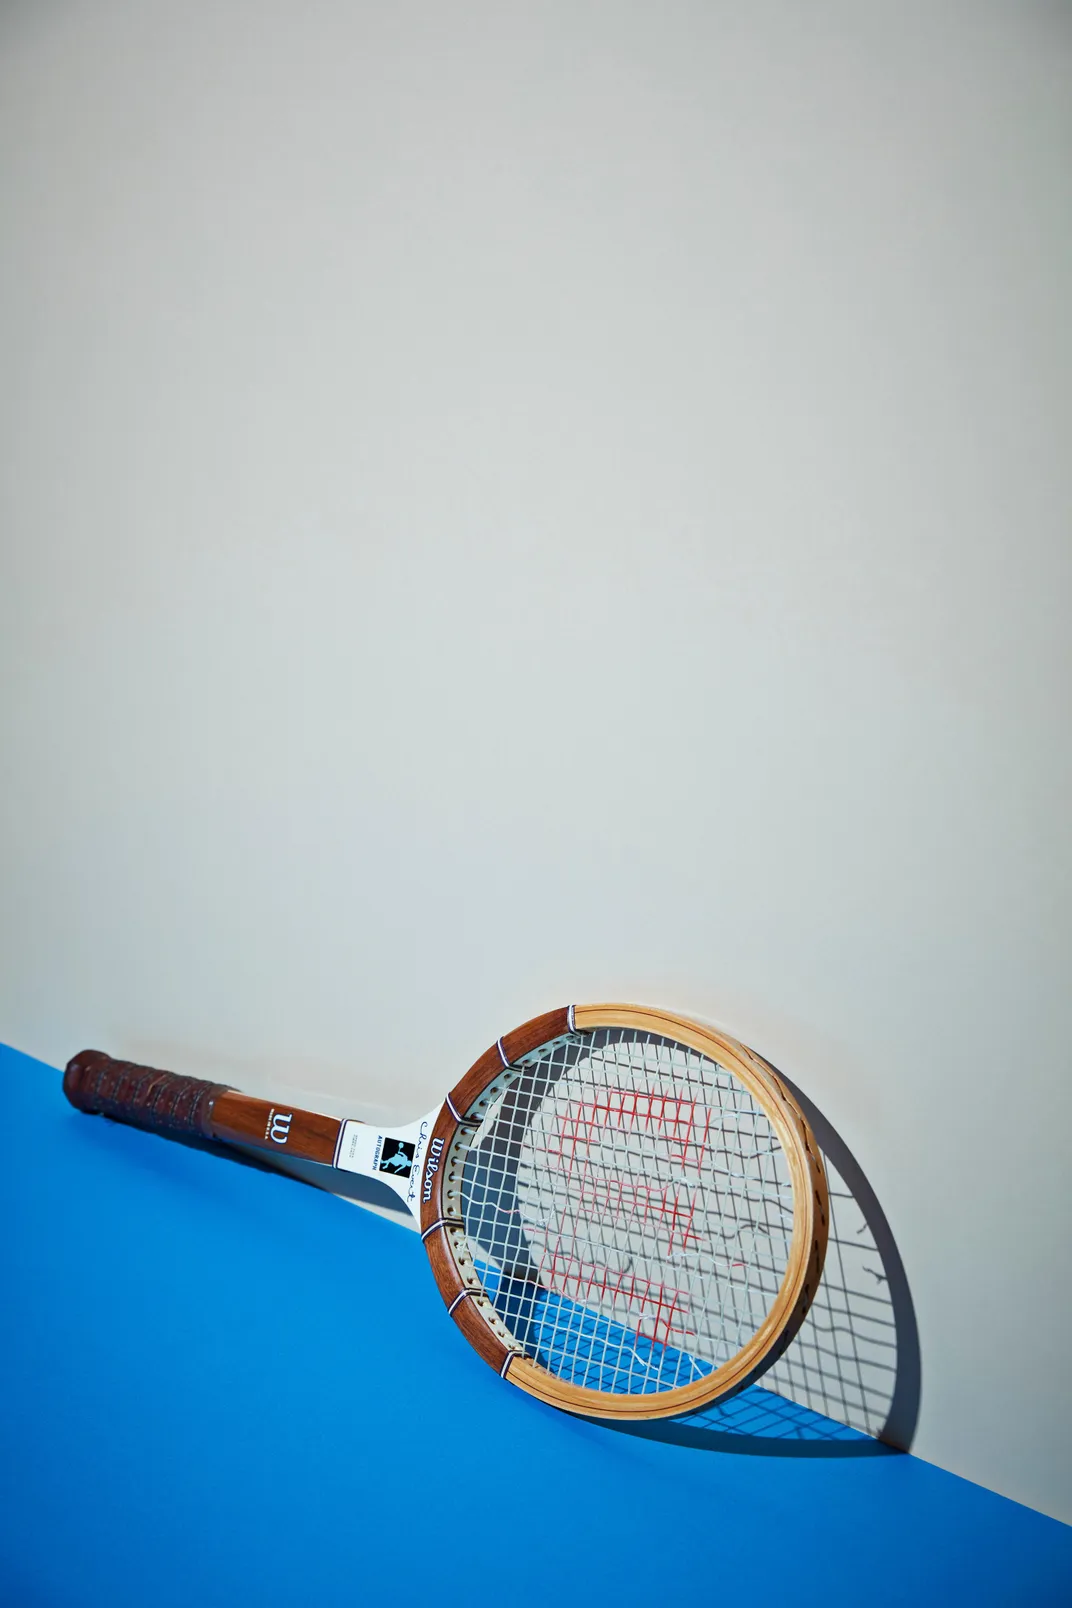 Chris Evert tennis racket